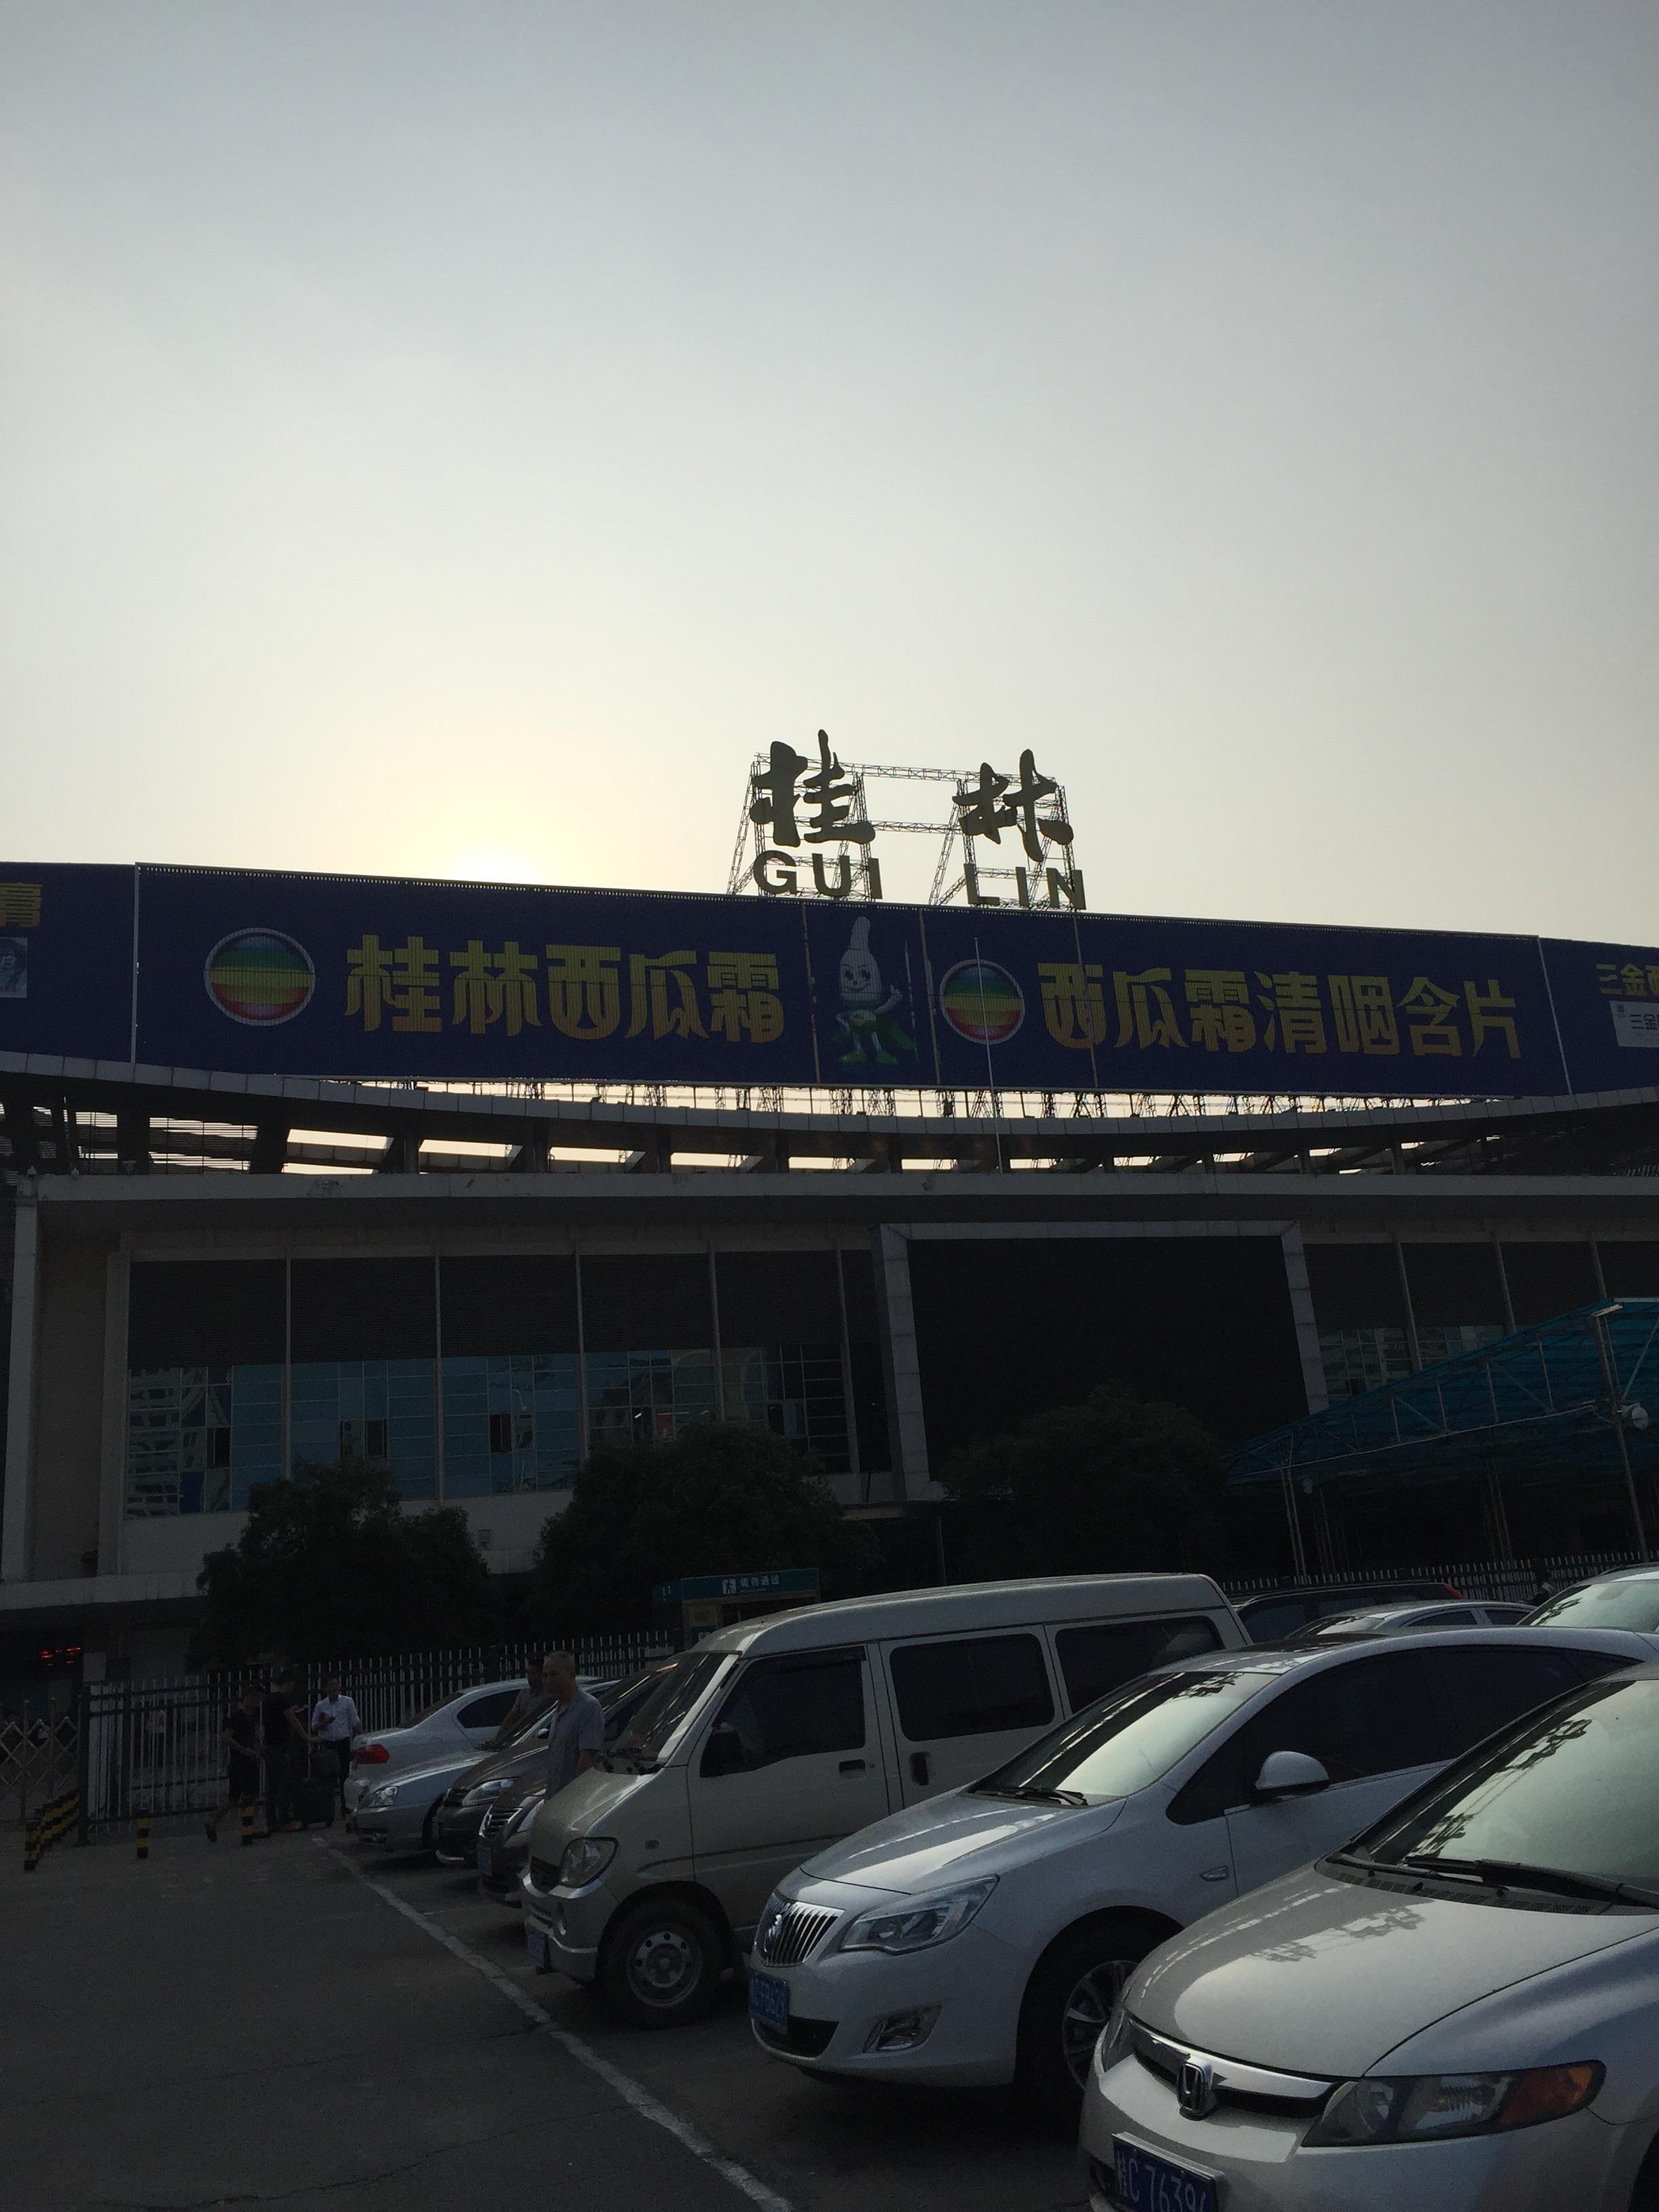 桂林火车站图图片